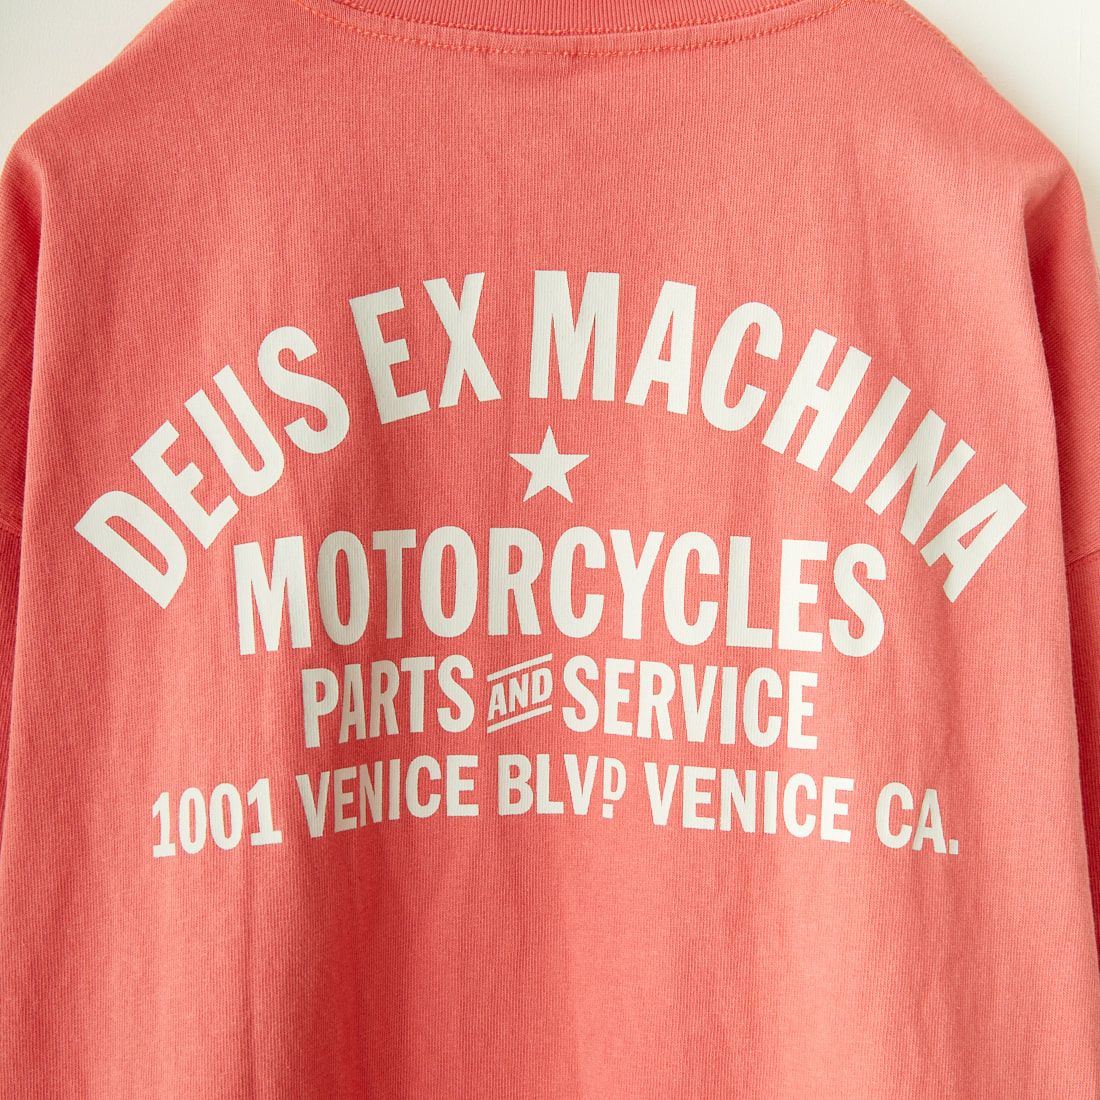 DEUS EX MACHINA [デウス エクス マキナ] VENICE ロングスリーブTシャツ [DMW231931] RED ROSE